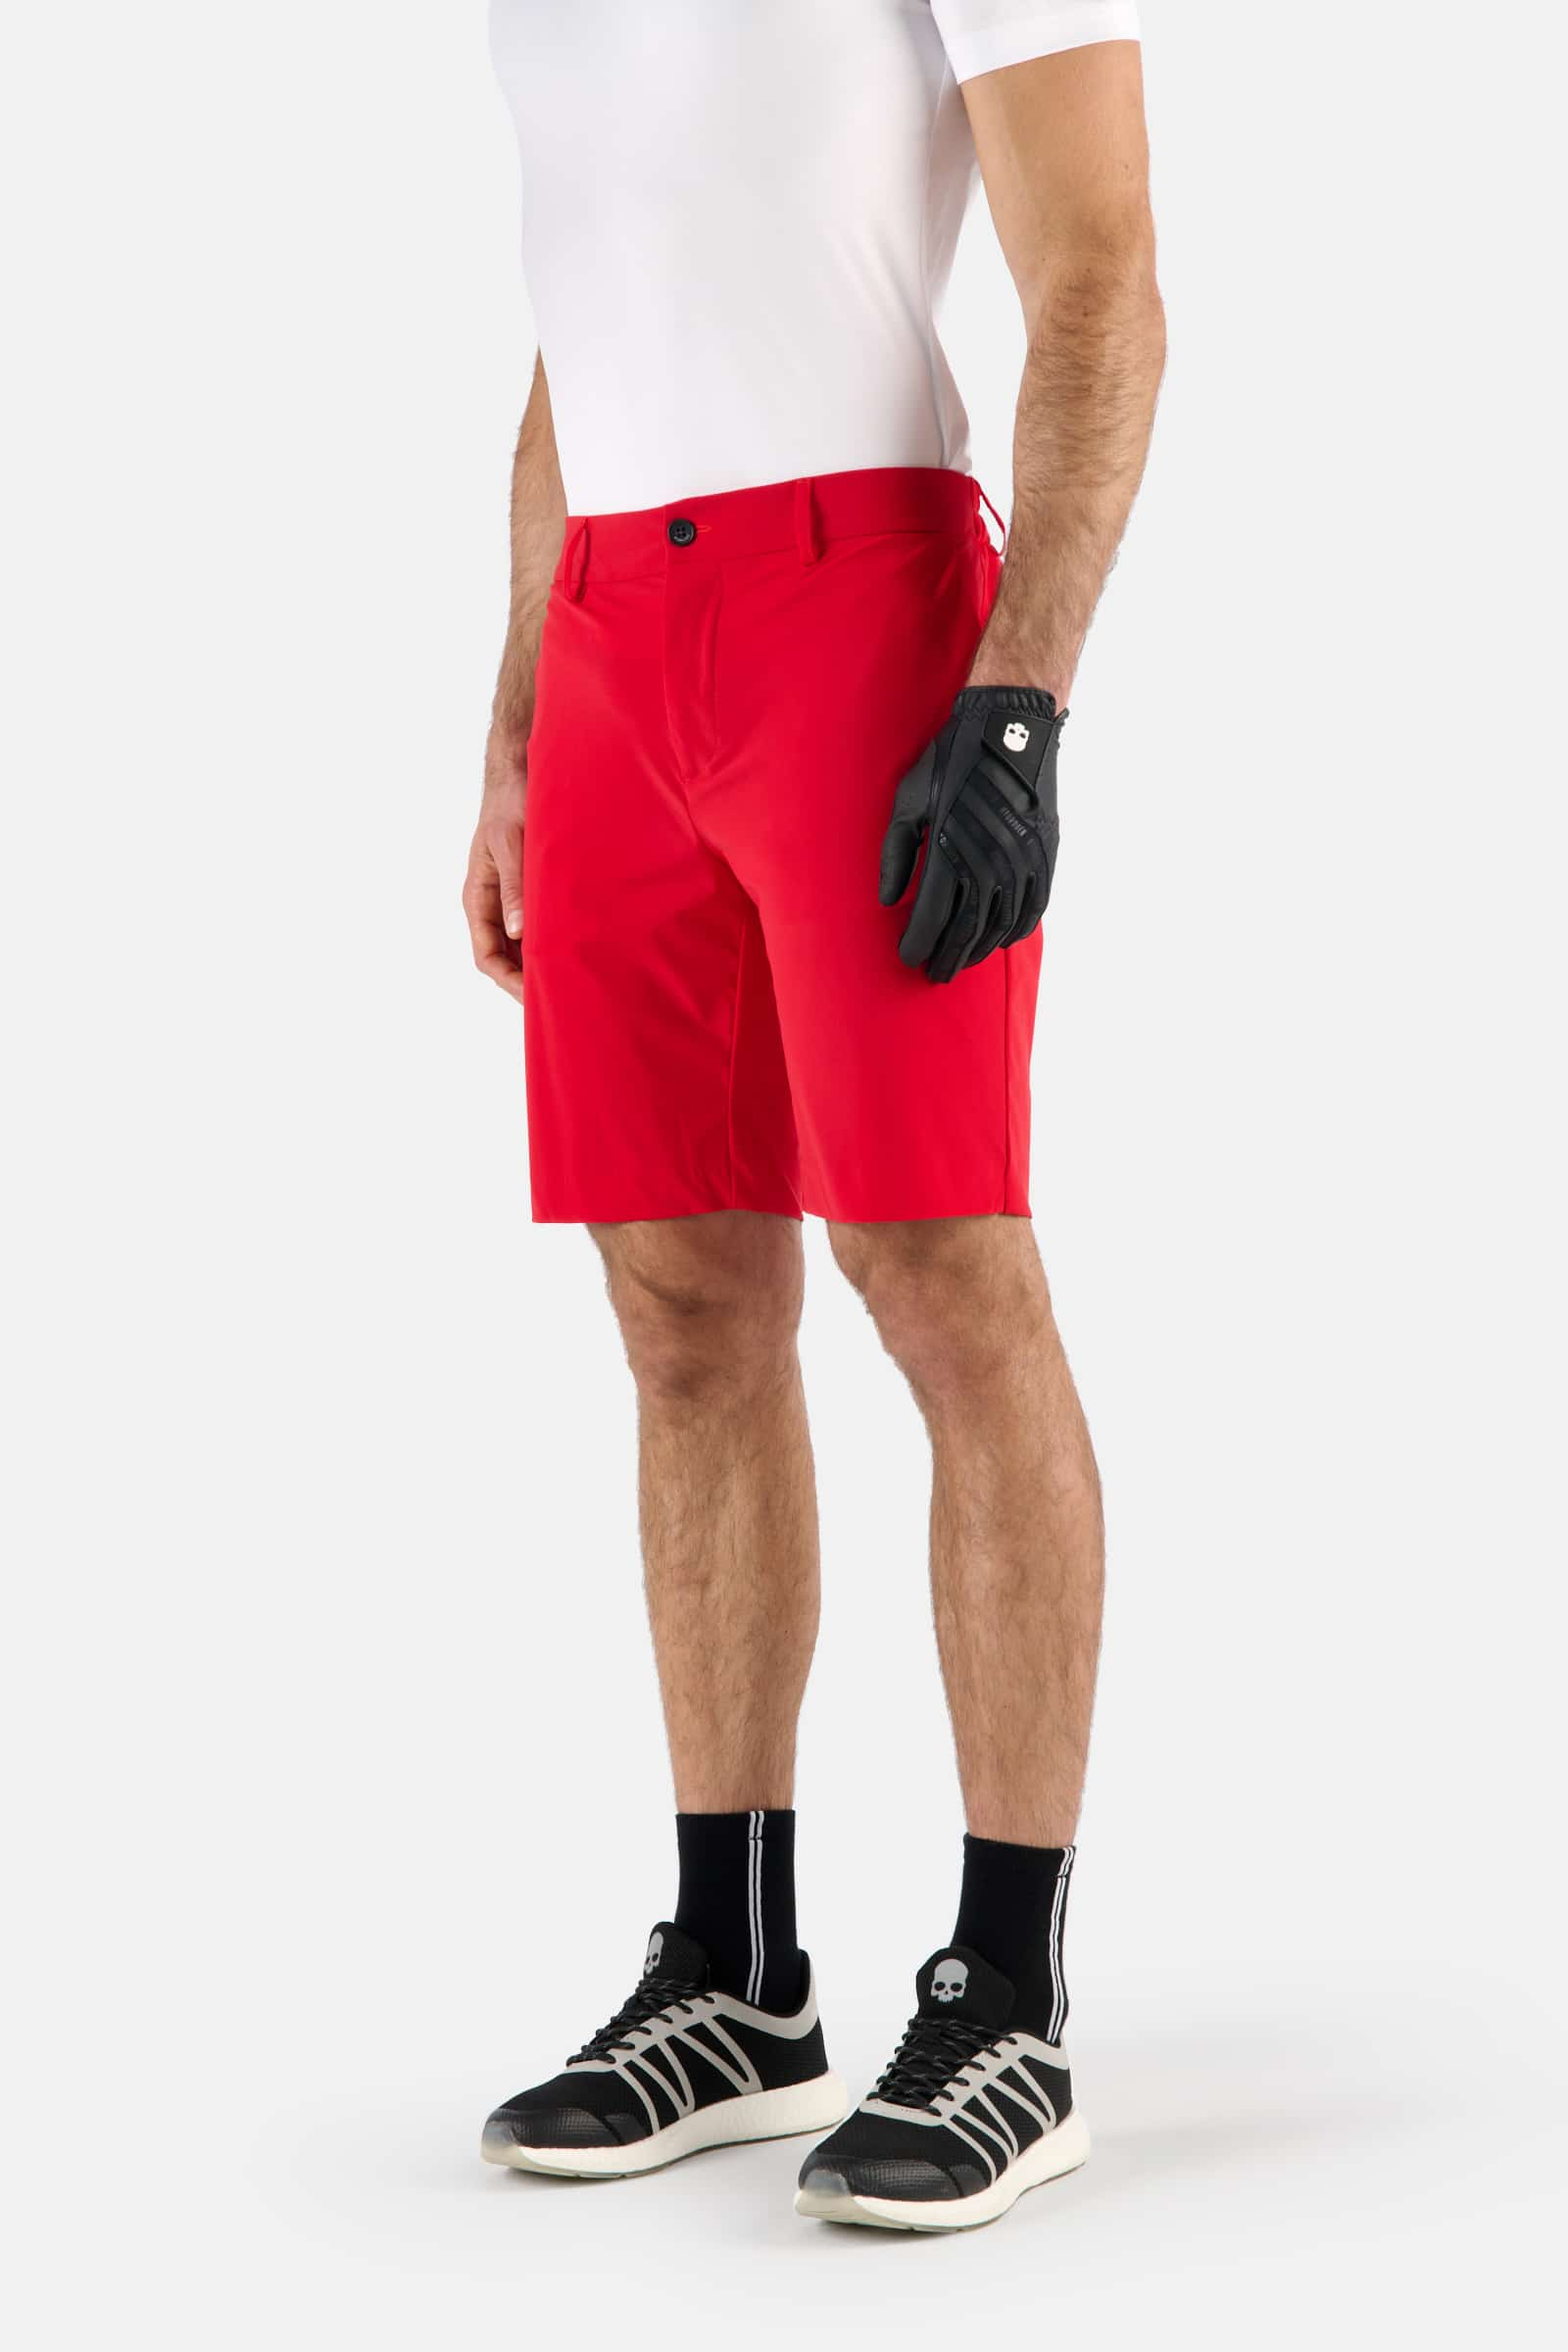 GOLF SHORTS - RED - Hydrogen - Luxury Sportwear